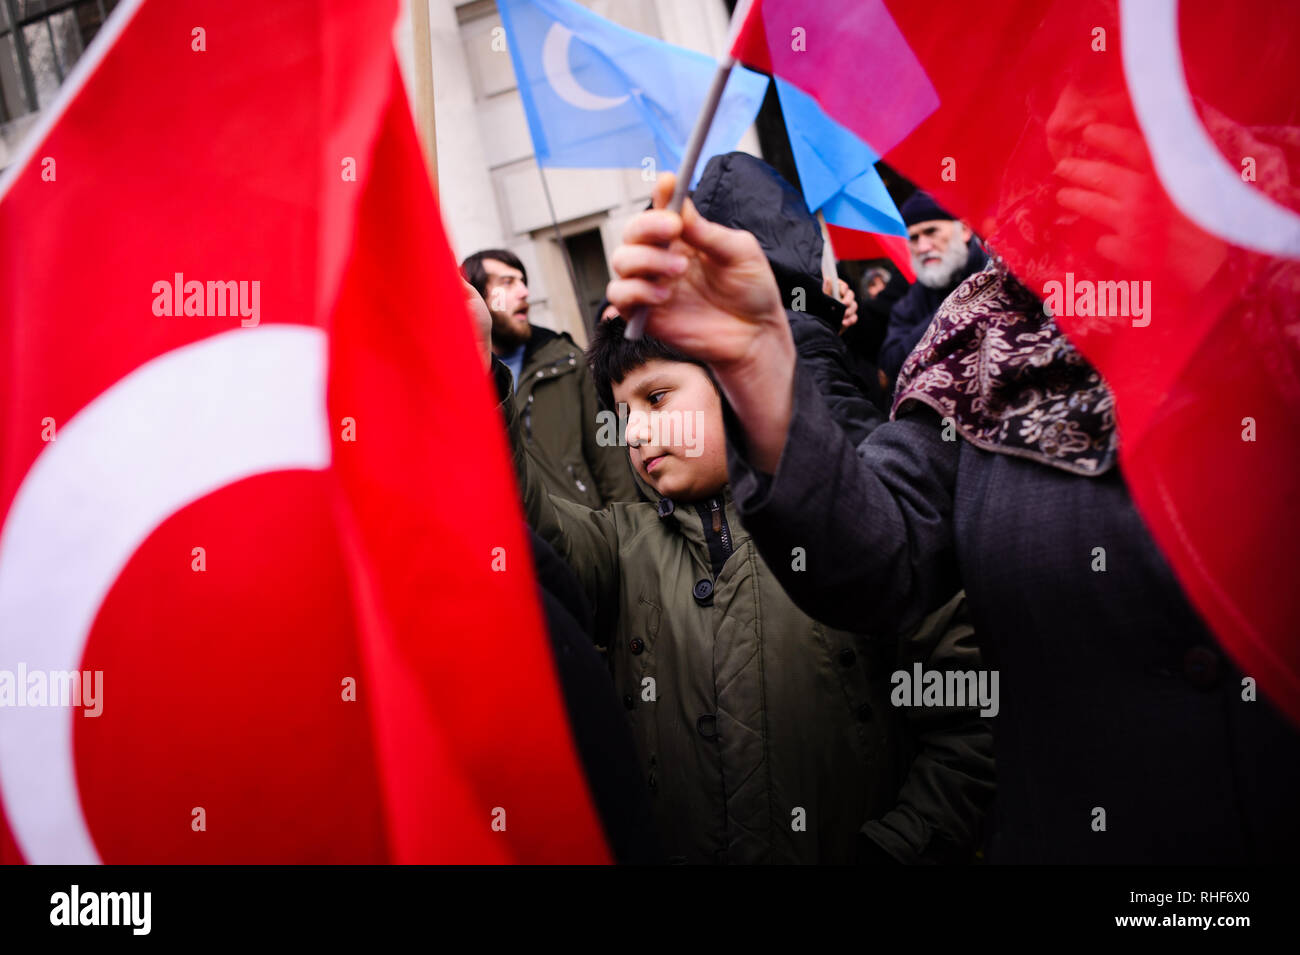 Un bambino visto tenendo un flag durante una manifestazione di protesta contro le politiche cinesi in Xinjiang. Gli attivisti protestare contro il trattamento della Uyghur musulmani dalle autorità cinesi nel Turkestan orientale della regione cinese della provincia dello Xinjiang a una protesta al di fuori dell'ambasciata cinese a Londra centrale. Foto Stock